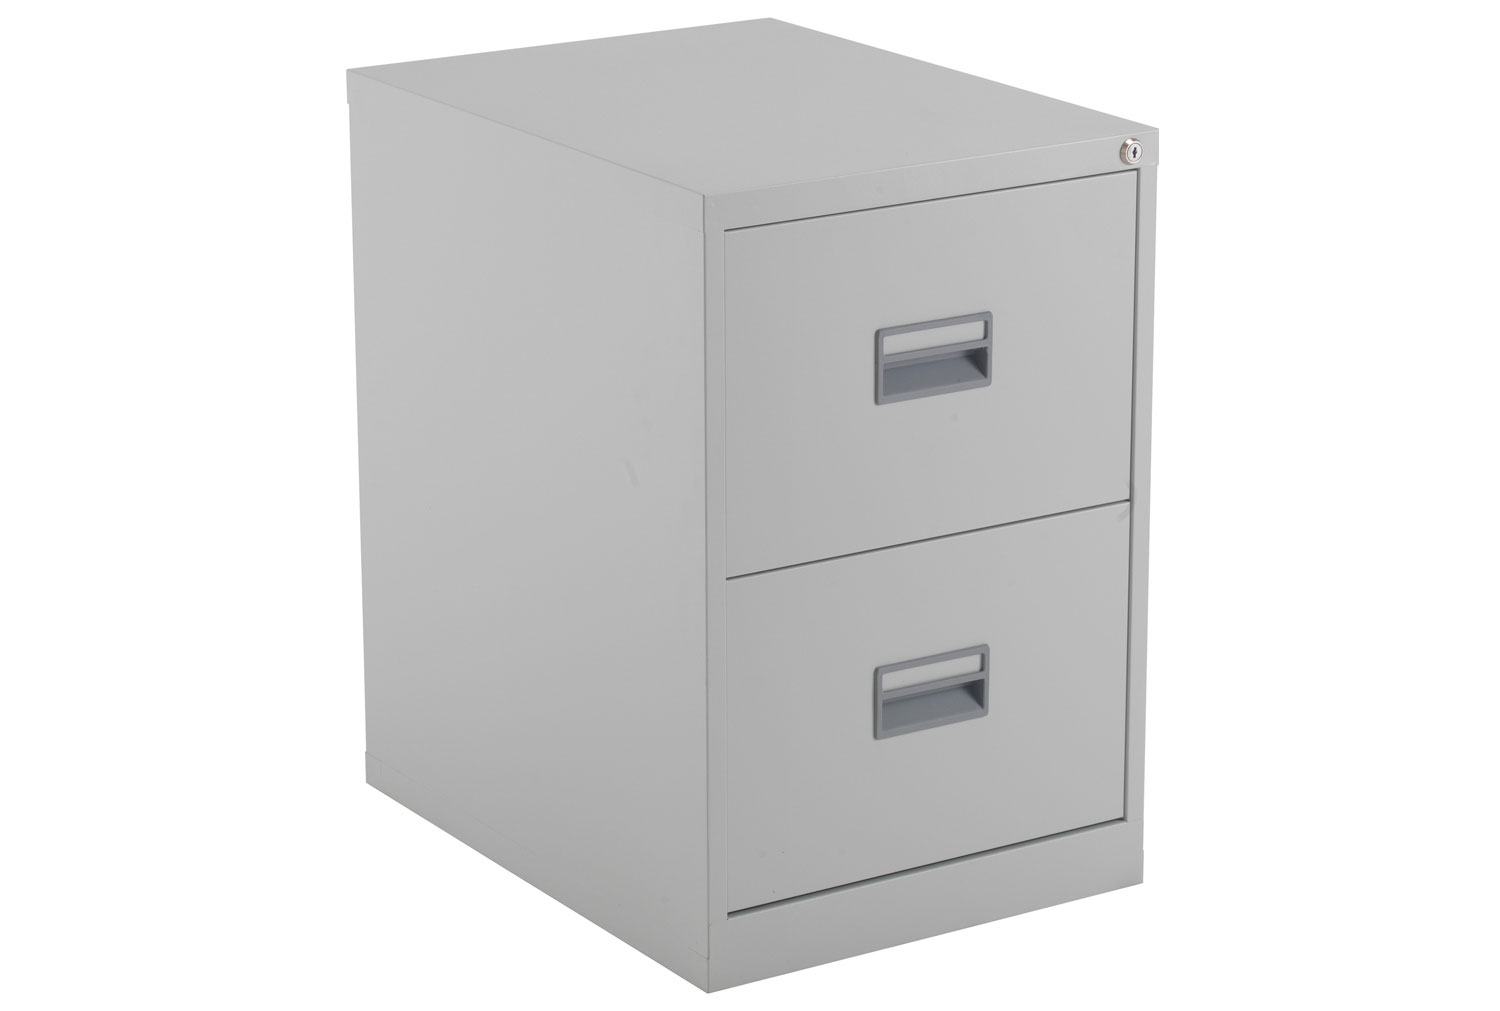 Value Line Metal Filing Cabinet, 2 Drawer - 47wx62dx70h (cm), Grey